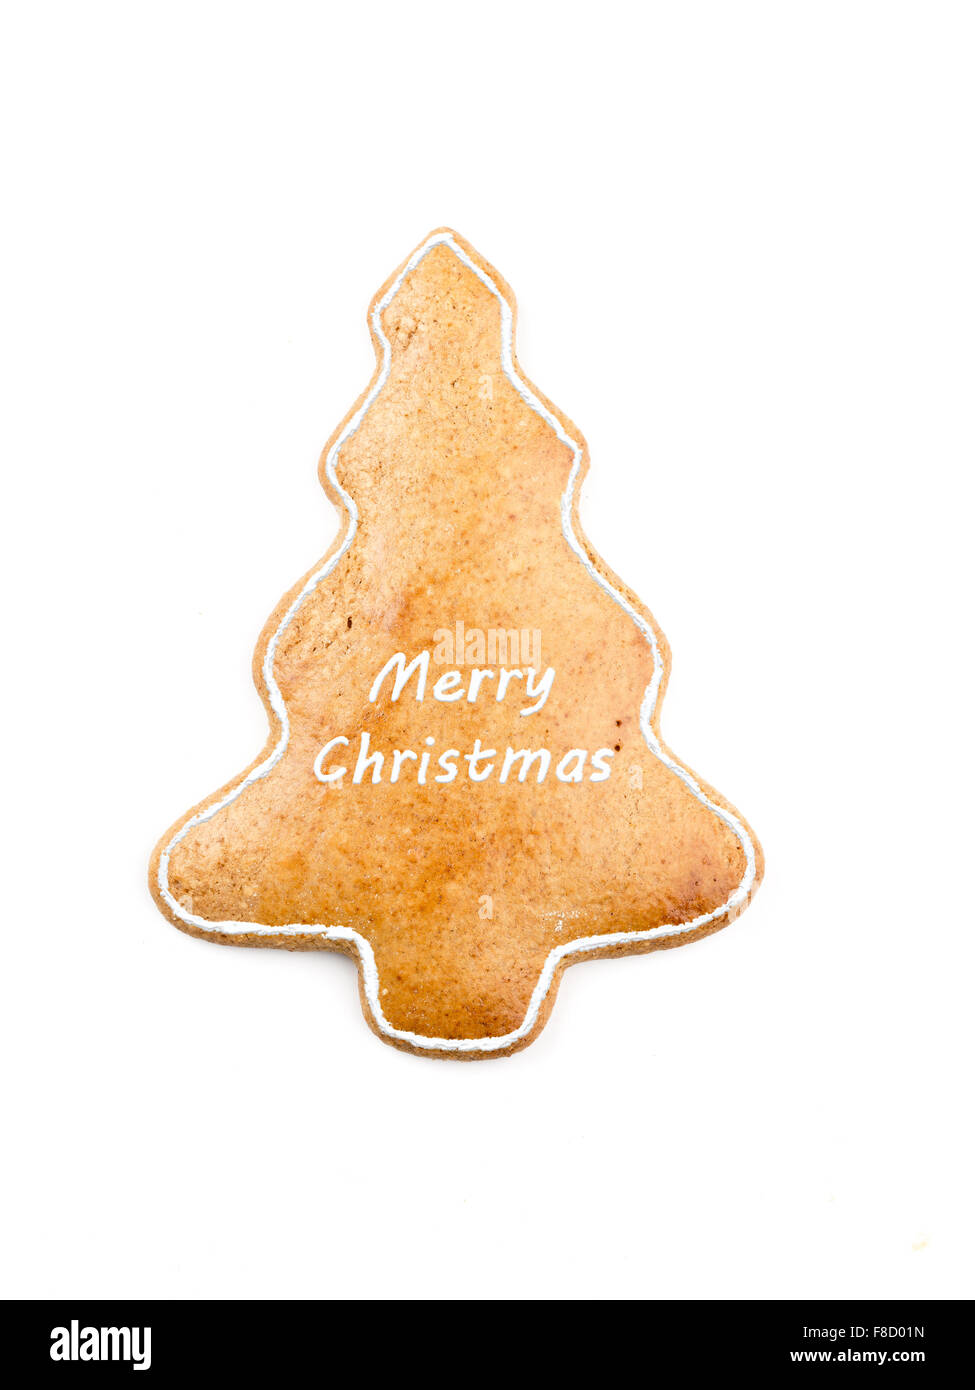 Árbol de navidad con galletas de jengibre como Merry Xmas ortografía sobre fondo blanco. Foto de stock